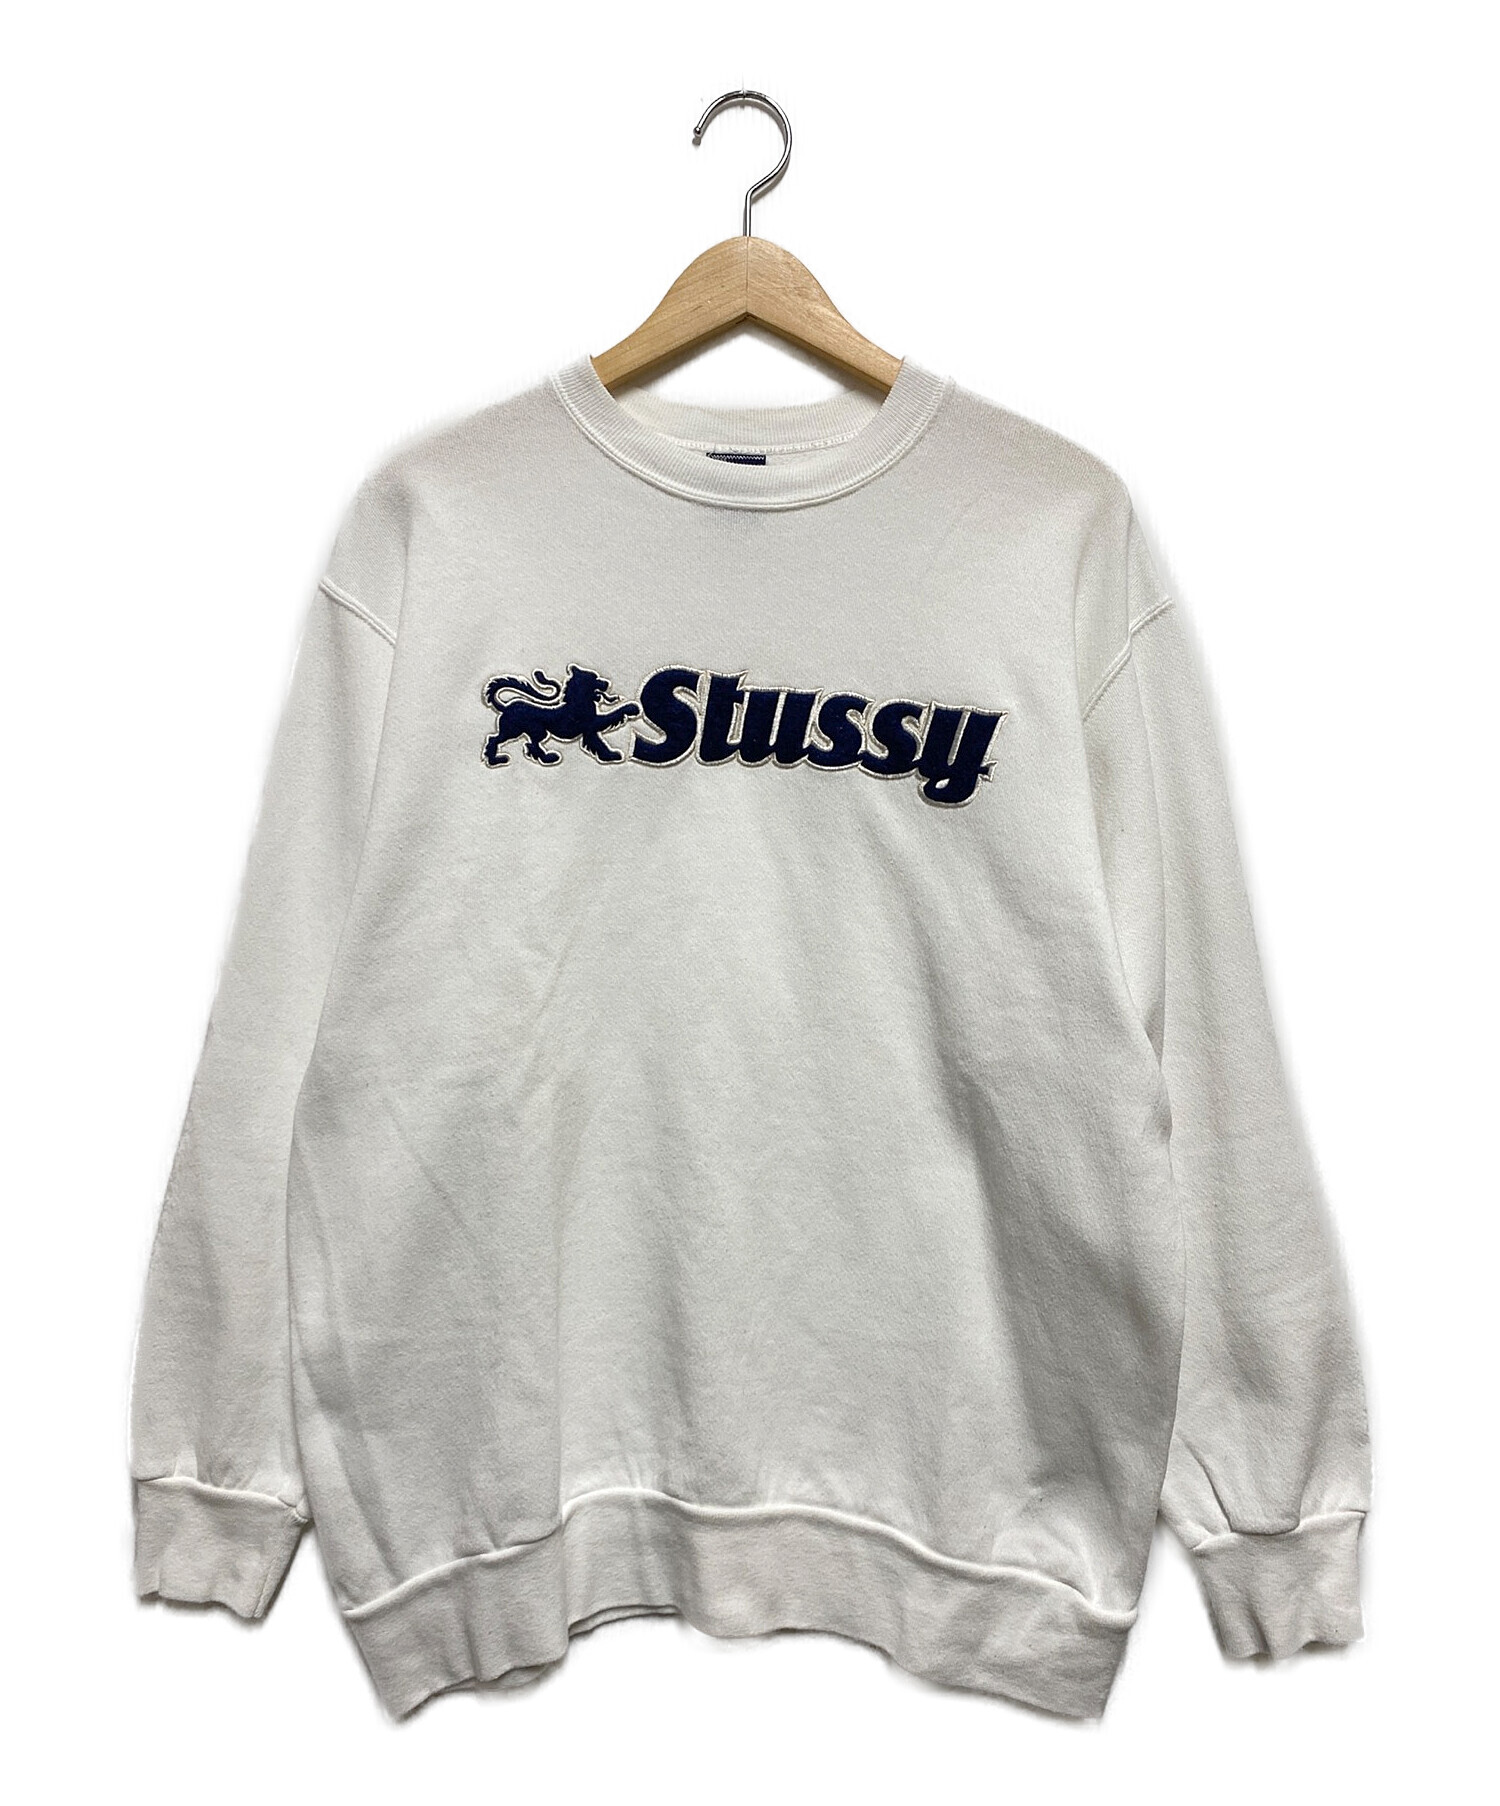 stussy (ステューシー) 90's ロゴスウェット ホワイト サイズ:М